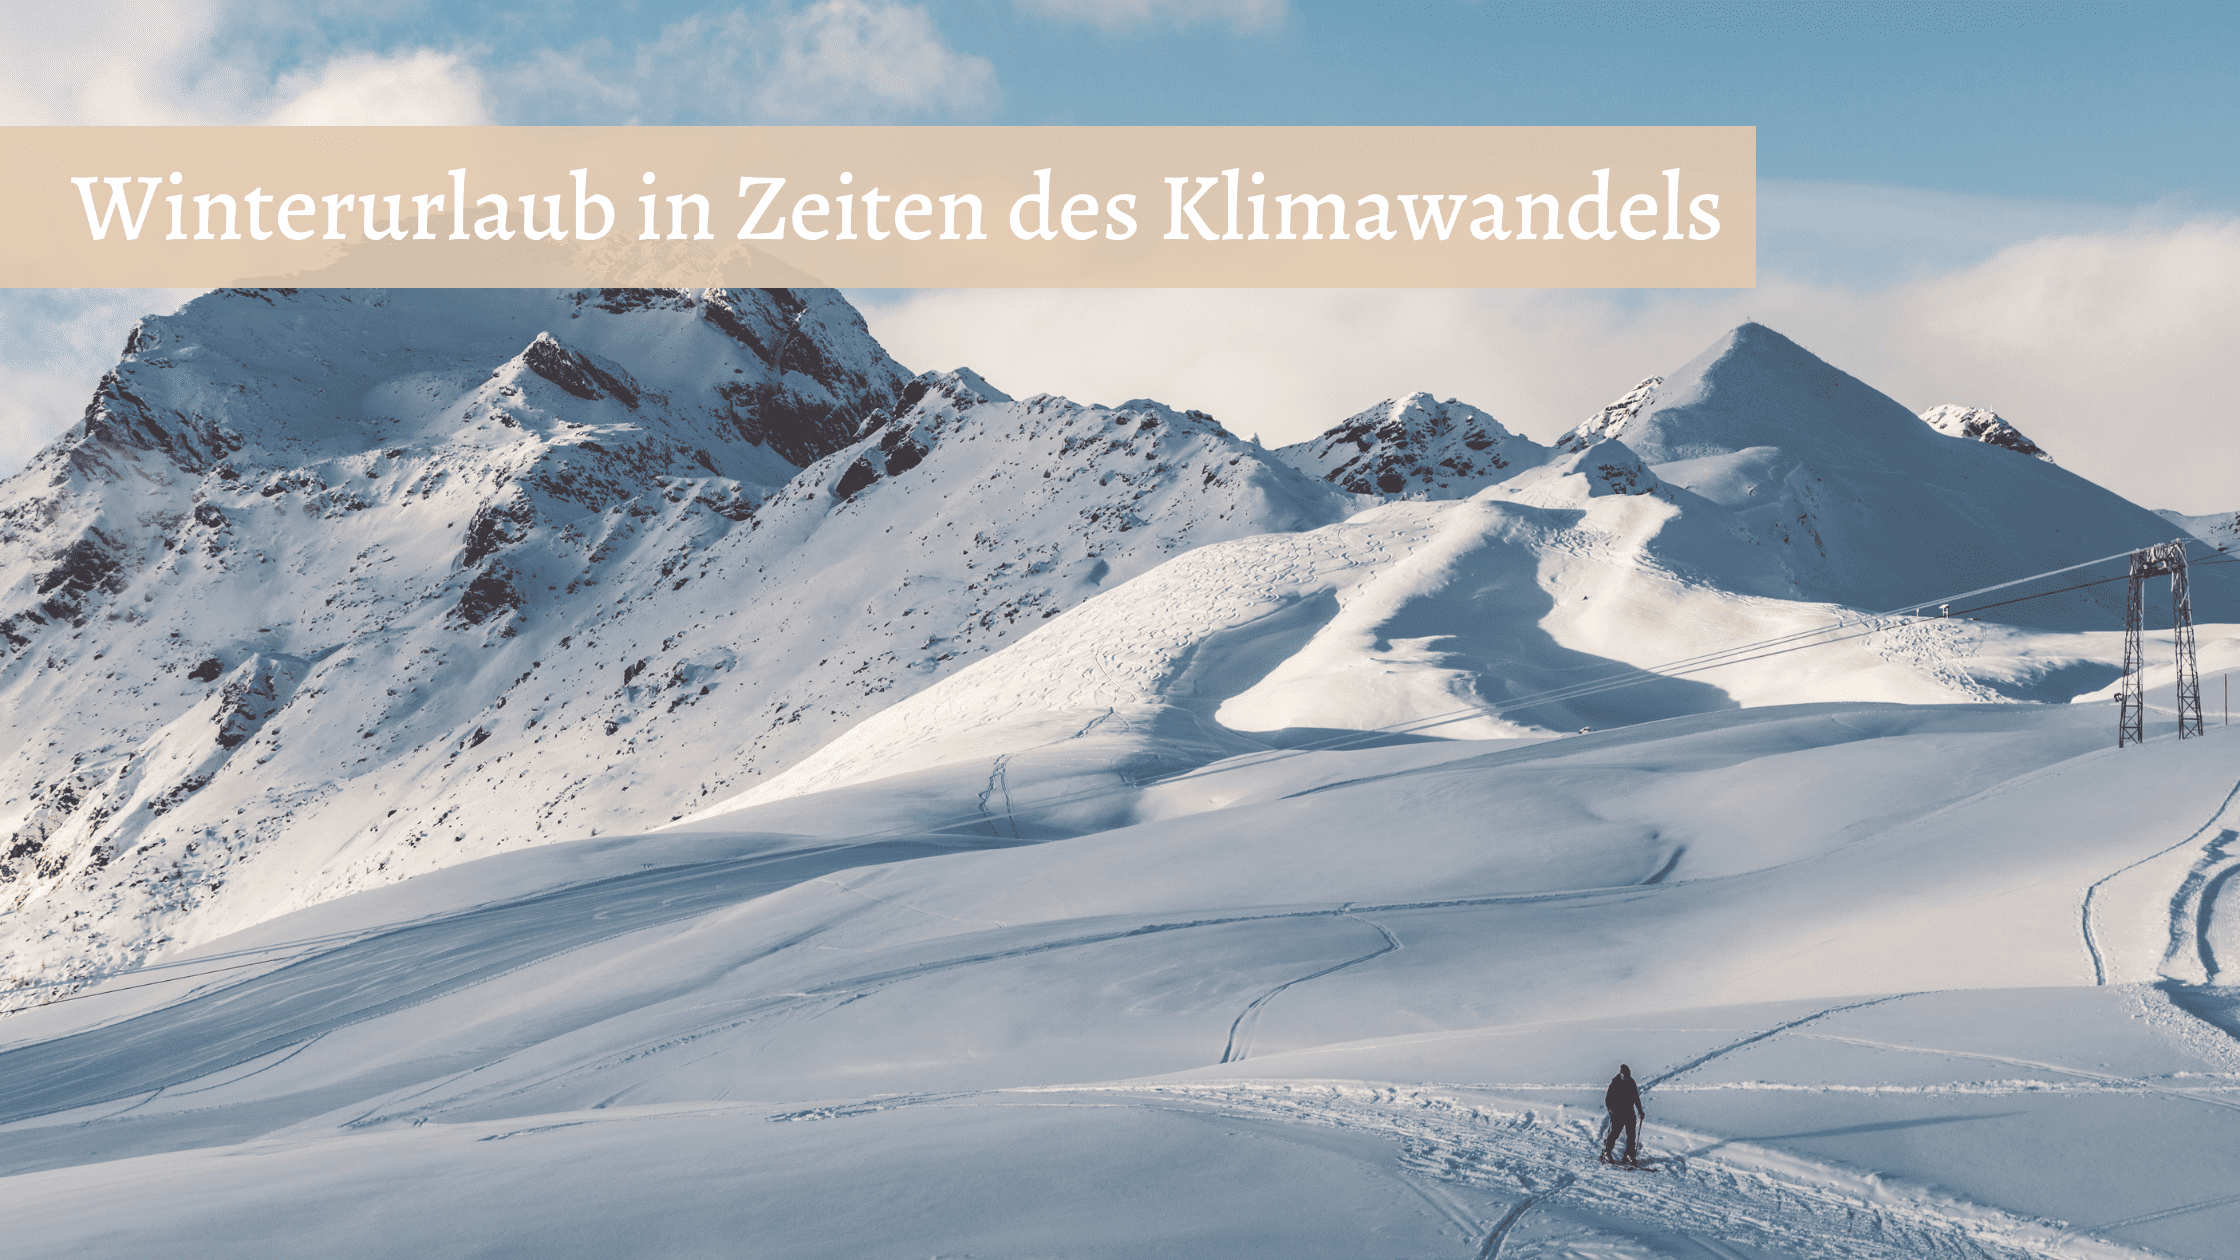 Winterurlaub in Zeiten des Klimawandels - Foto von einem verschneiten Berg inklusive Skipiste, auf der ein einsamer Skifahrer unterwegs ist.